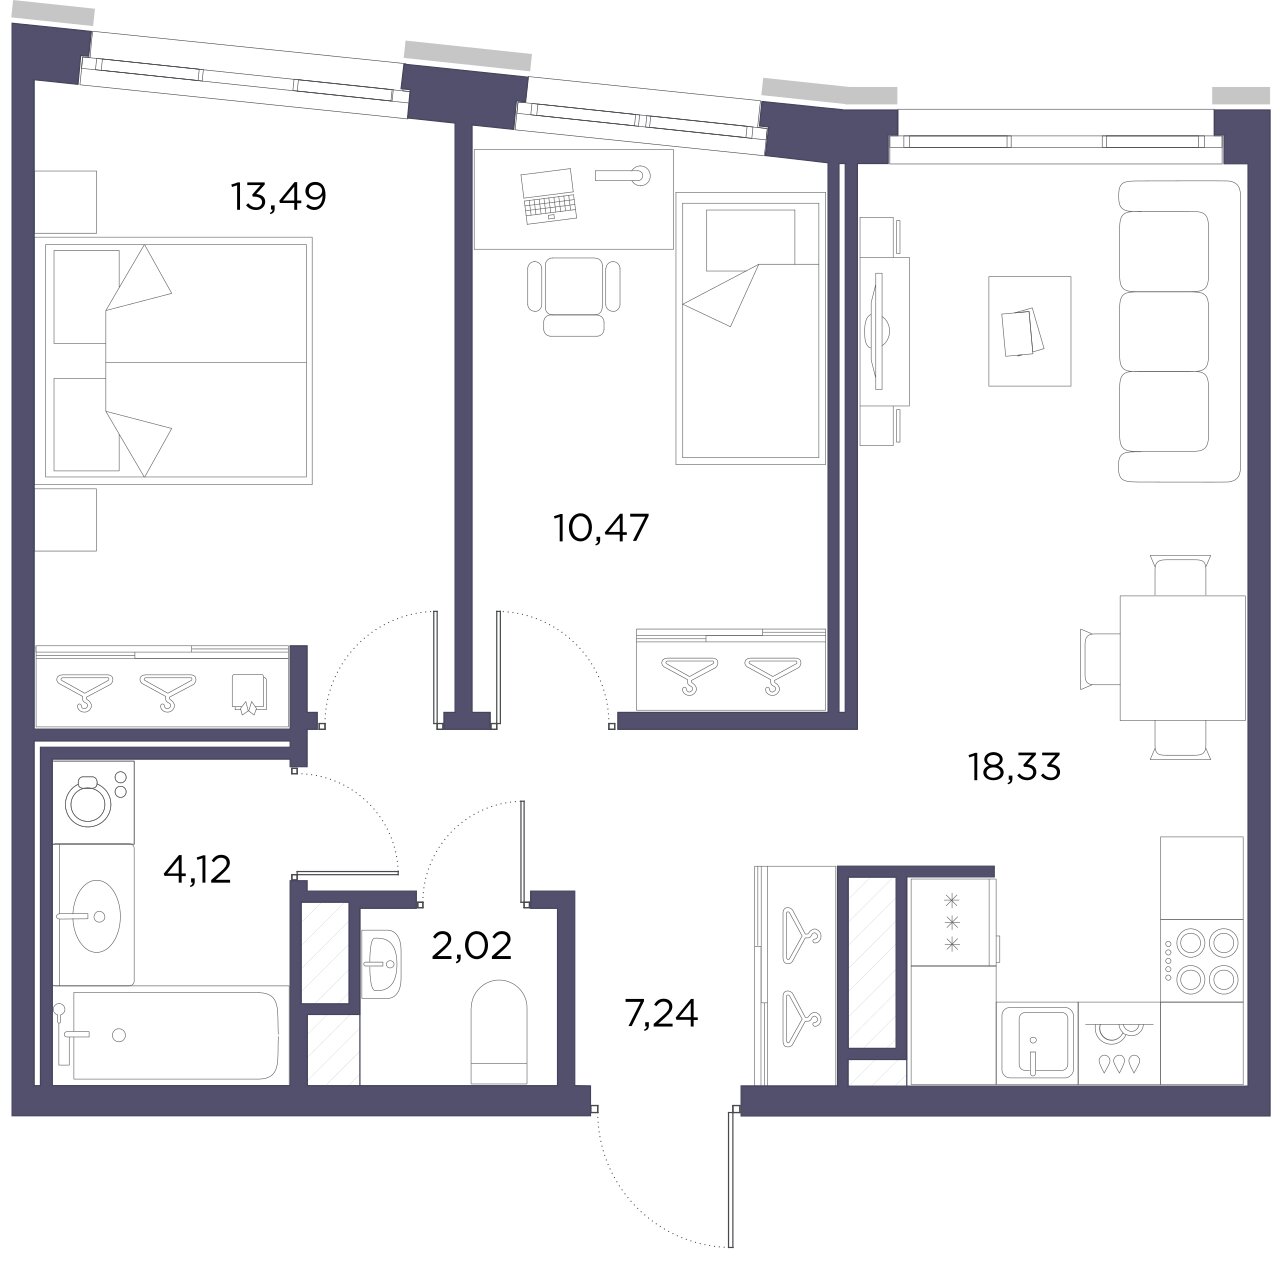 2-комнатная квартира, 55.67 м²; этаж: 8 - купить в Санкт-Петербурге